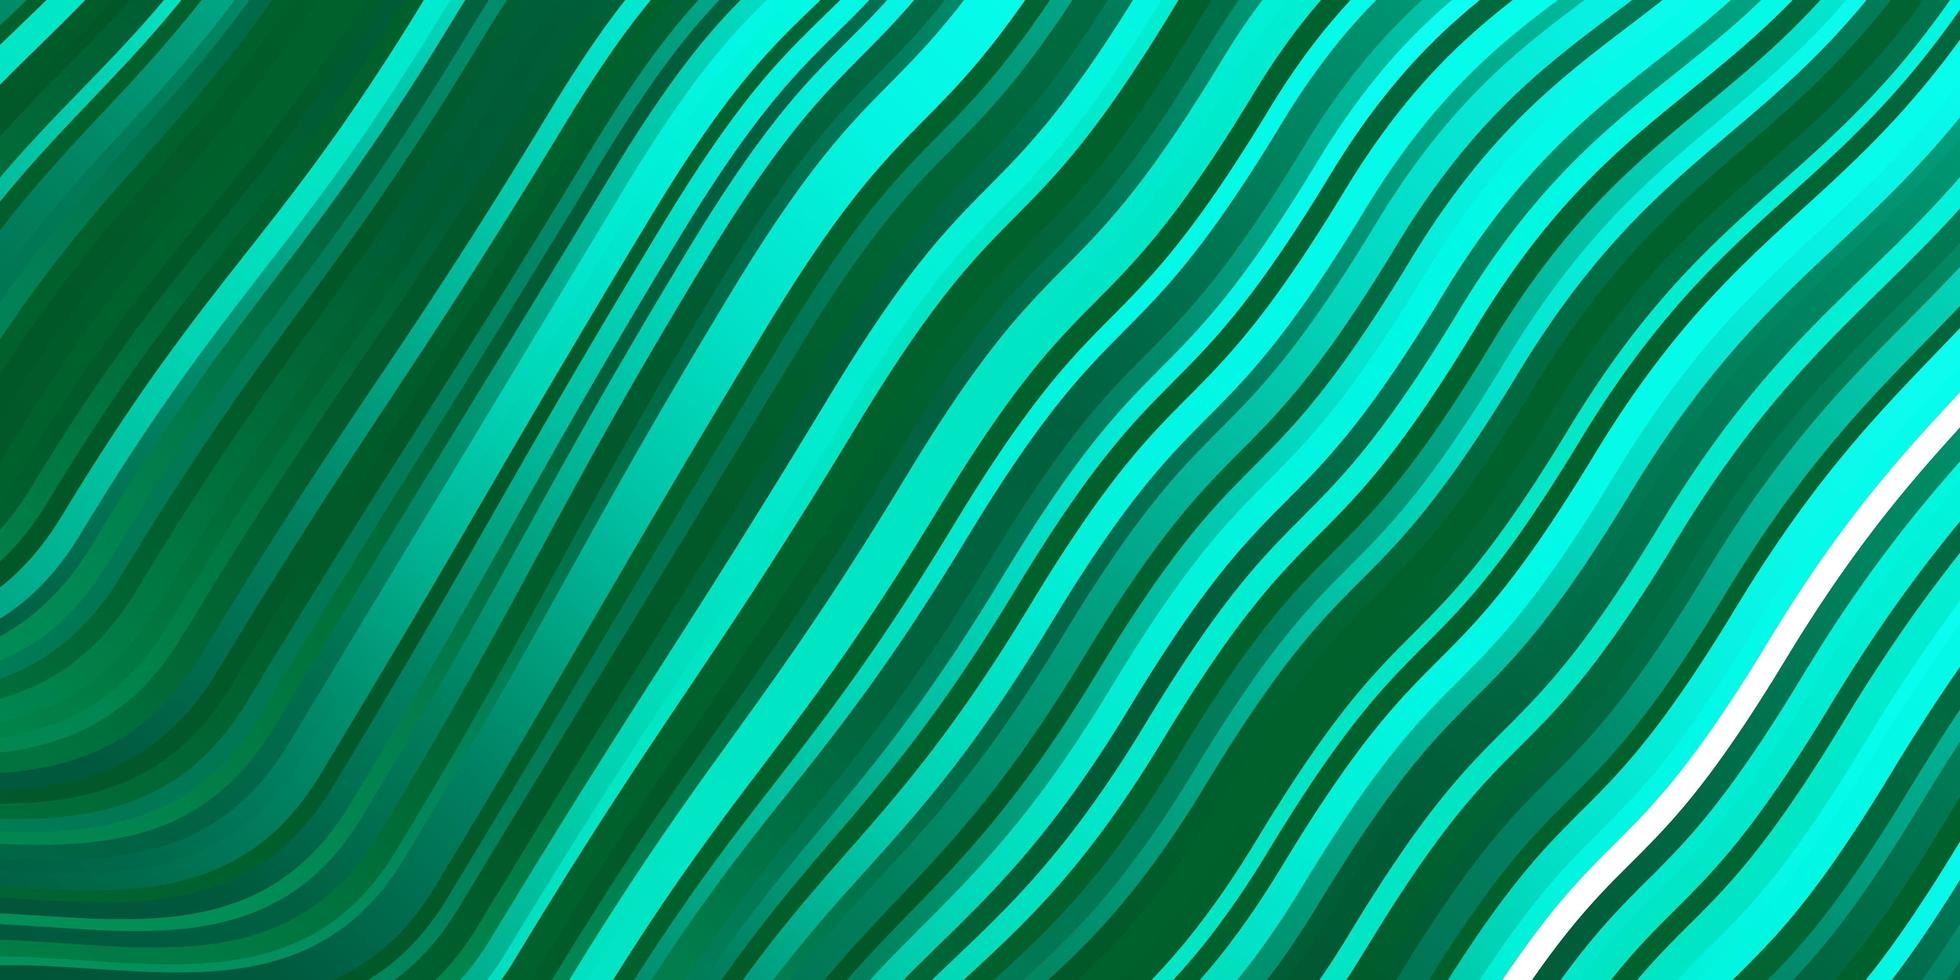 sfondo vettoriale verde chiaro con linee curve